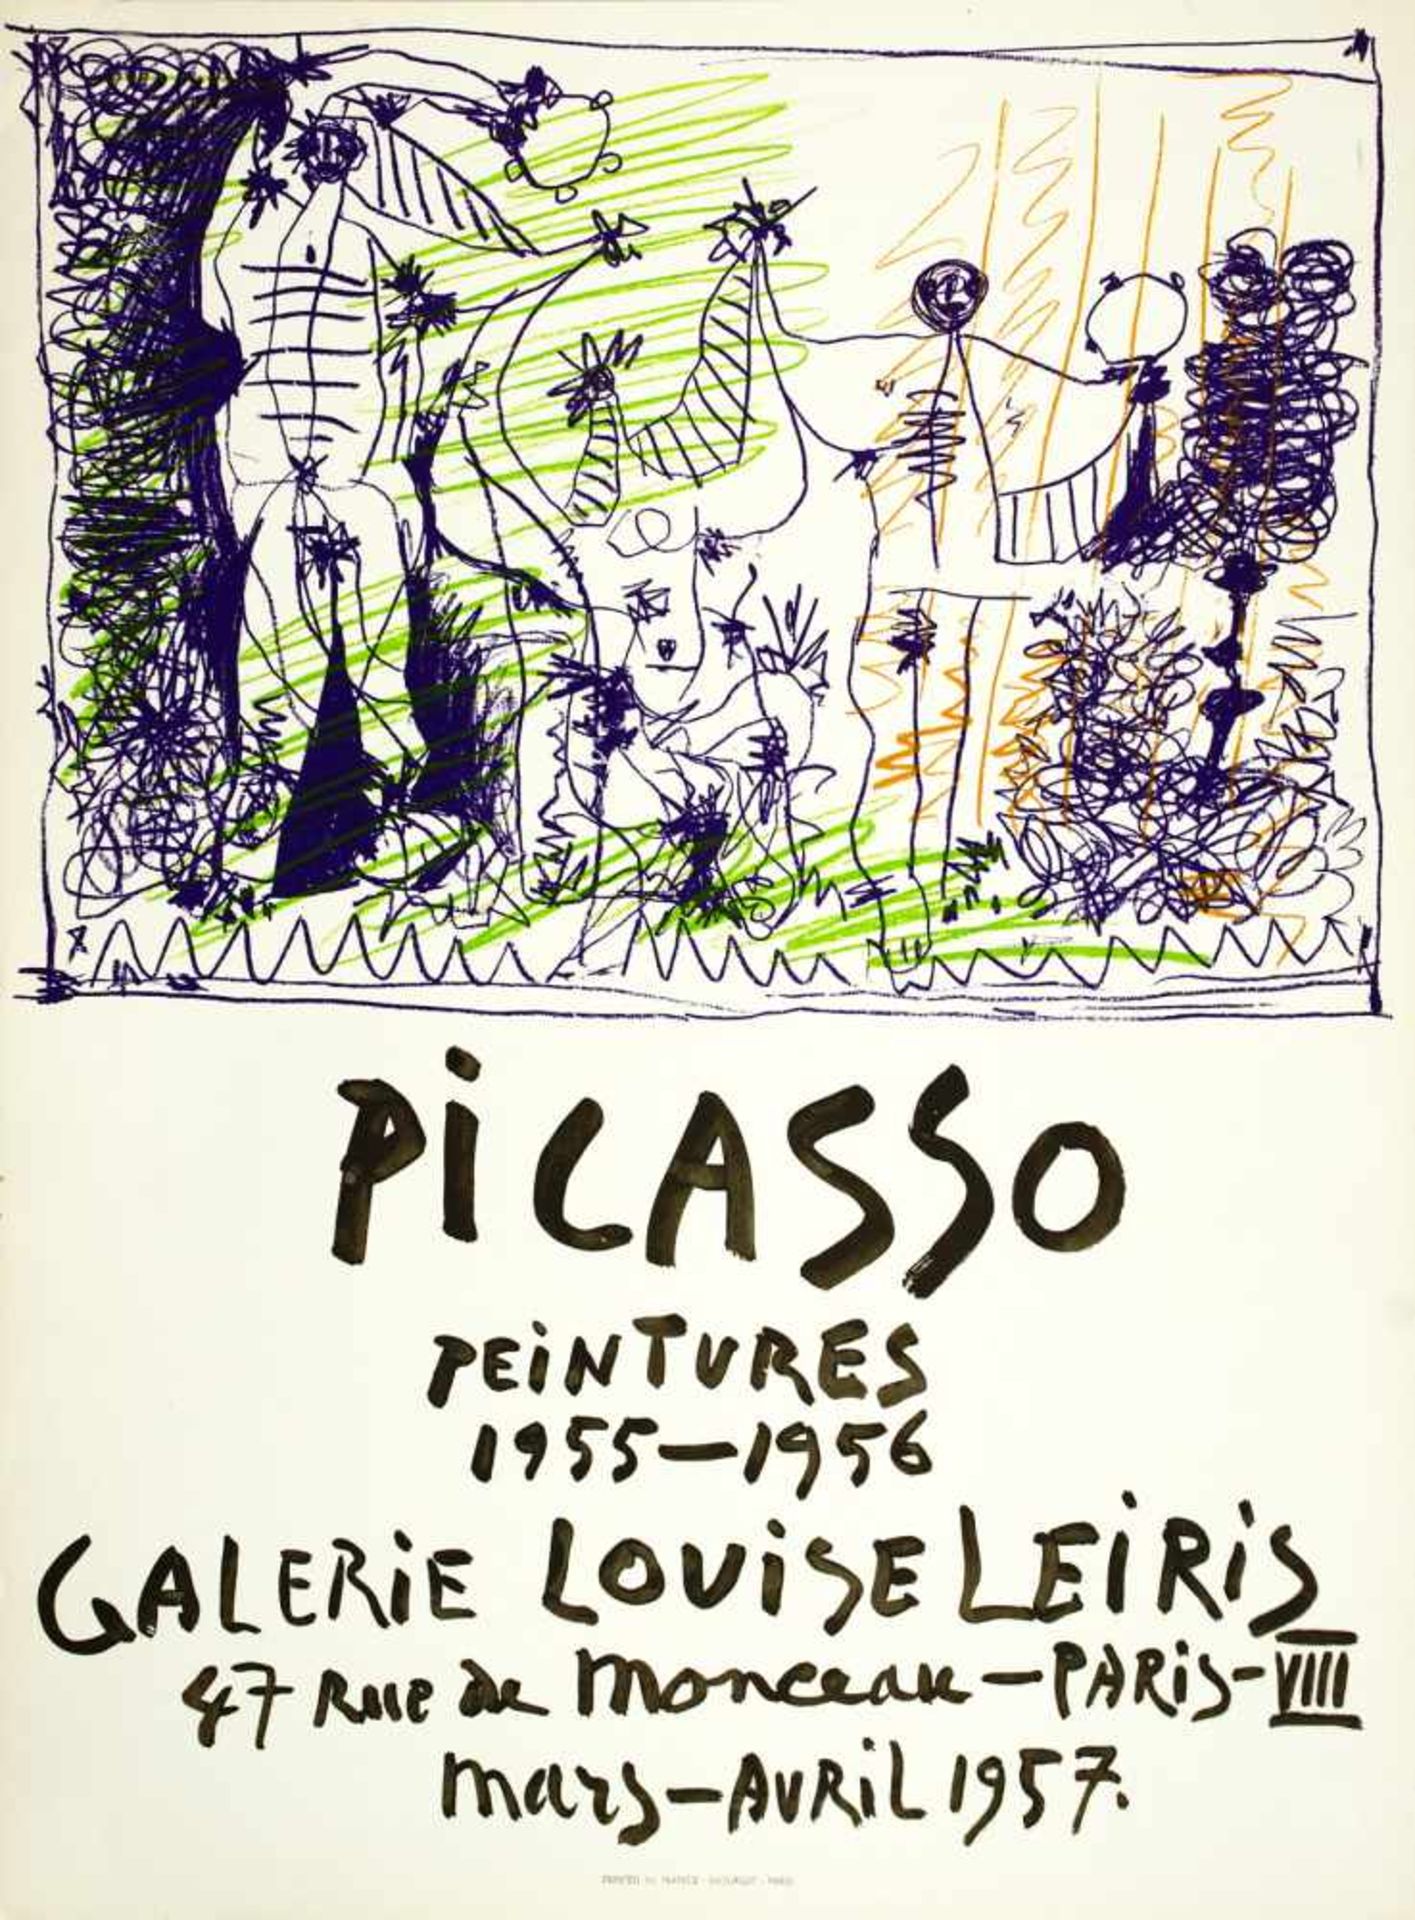 Pablo Picasso. Peintures 1955-1956. Farblithographie. 1957. 37 : 52 cm (73 : 54,2 cm). Eins von 1500